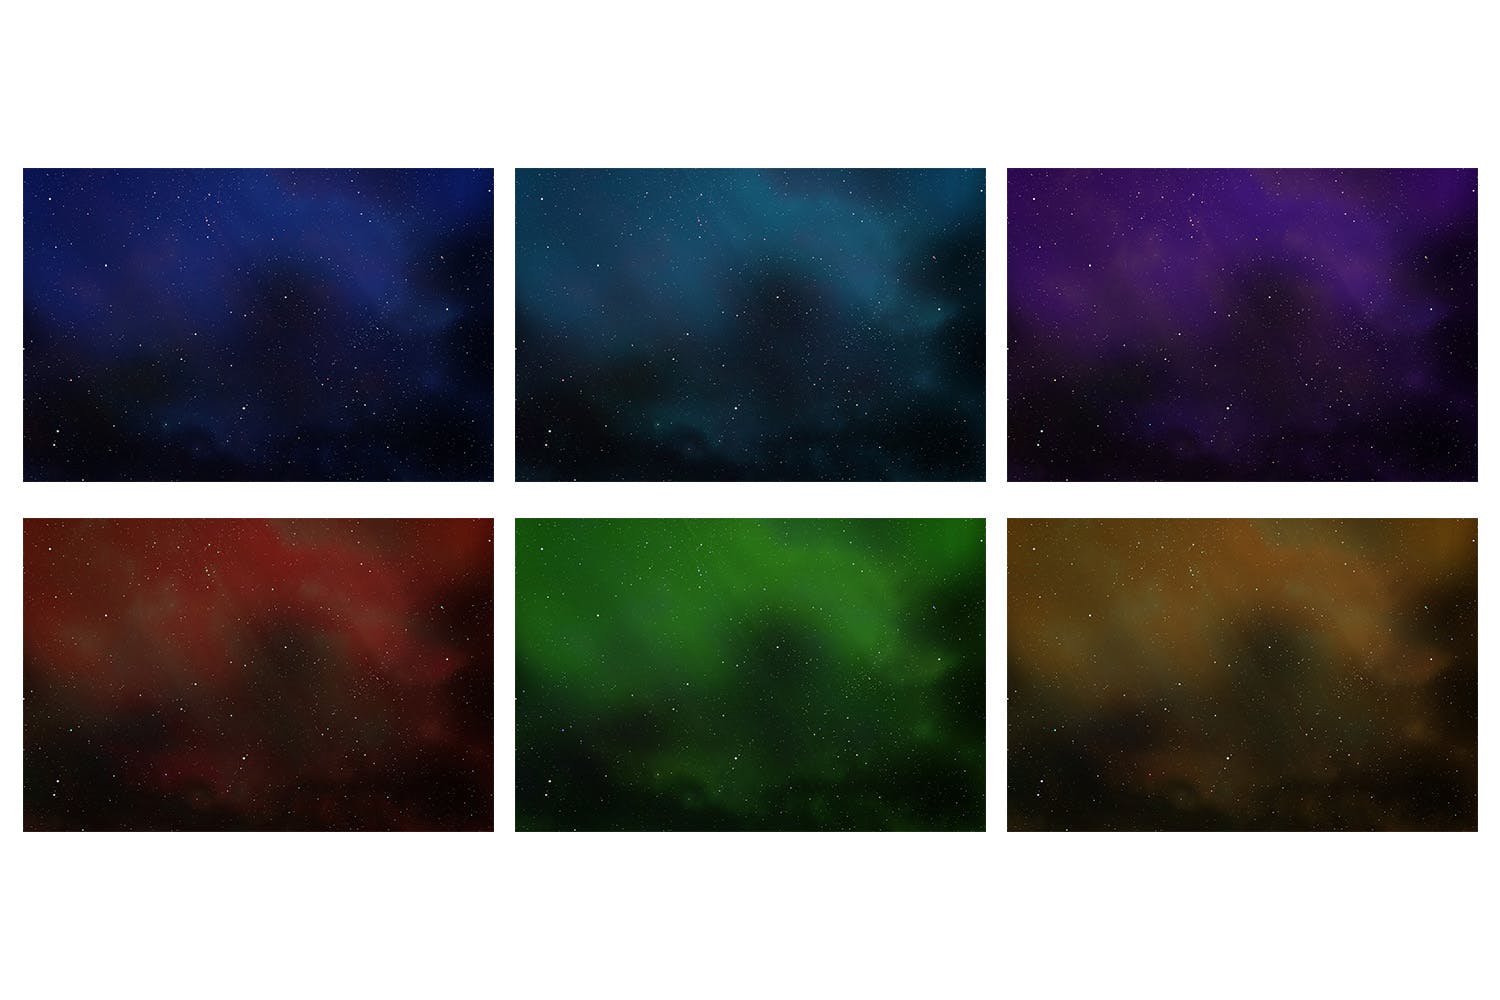 太空星空高清背景图片素材v3 Deep Space Backgrounds Vol. 3插图(1)